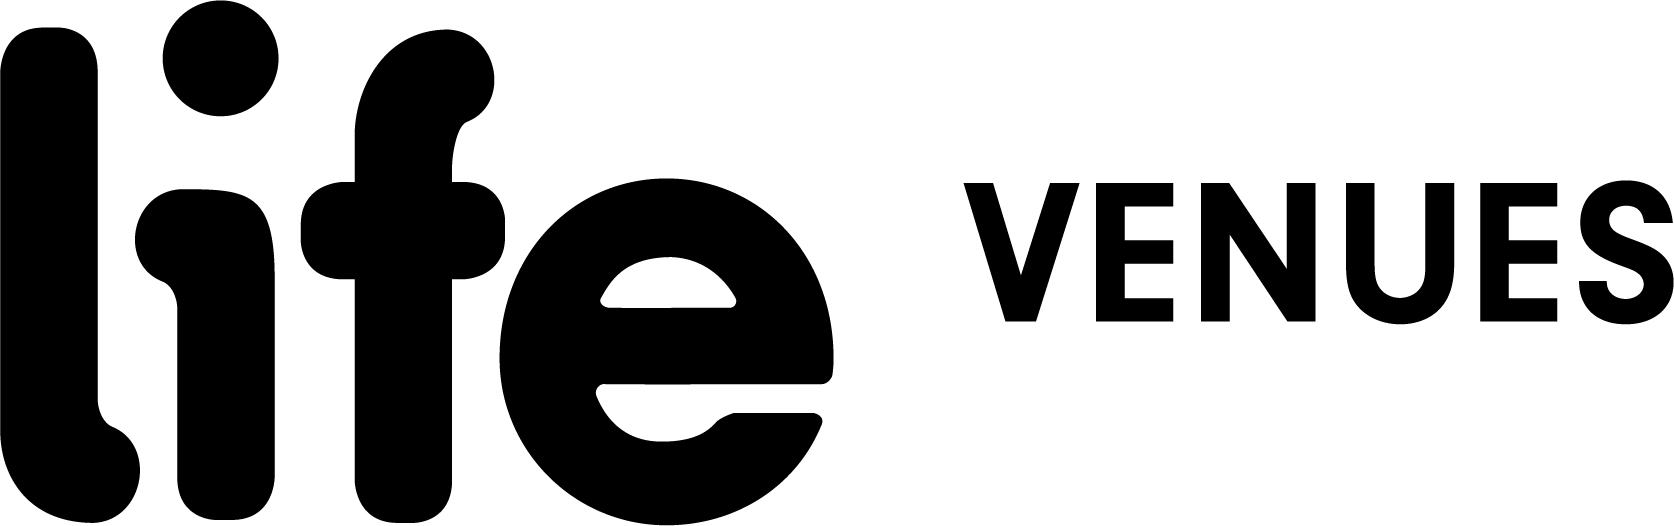 life-venues logo